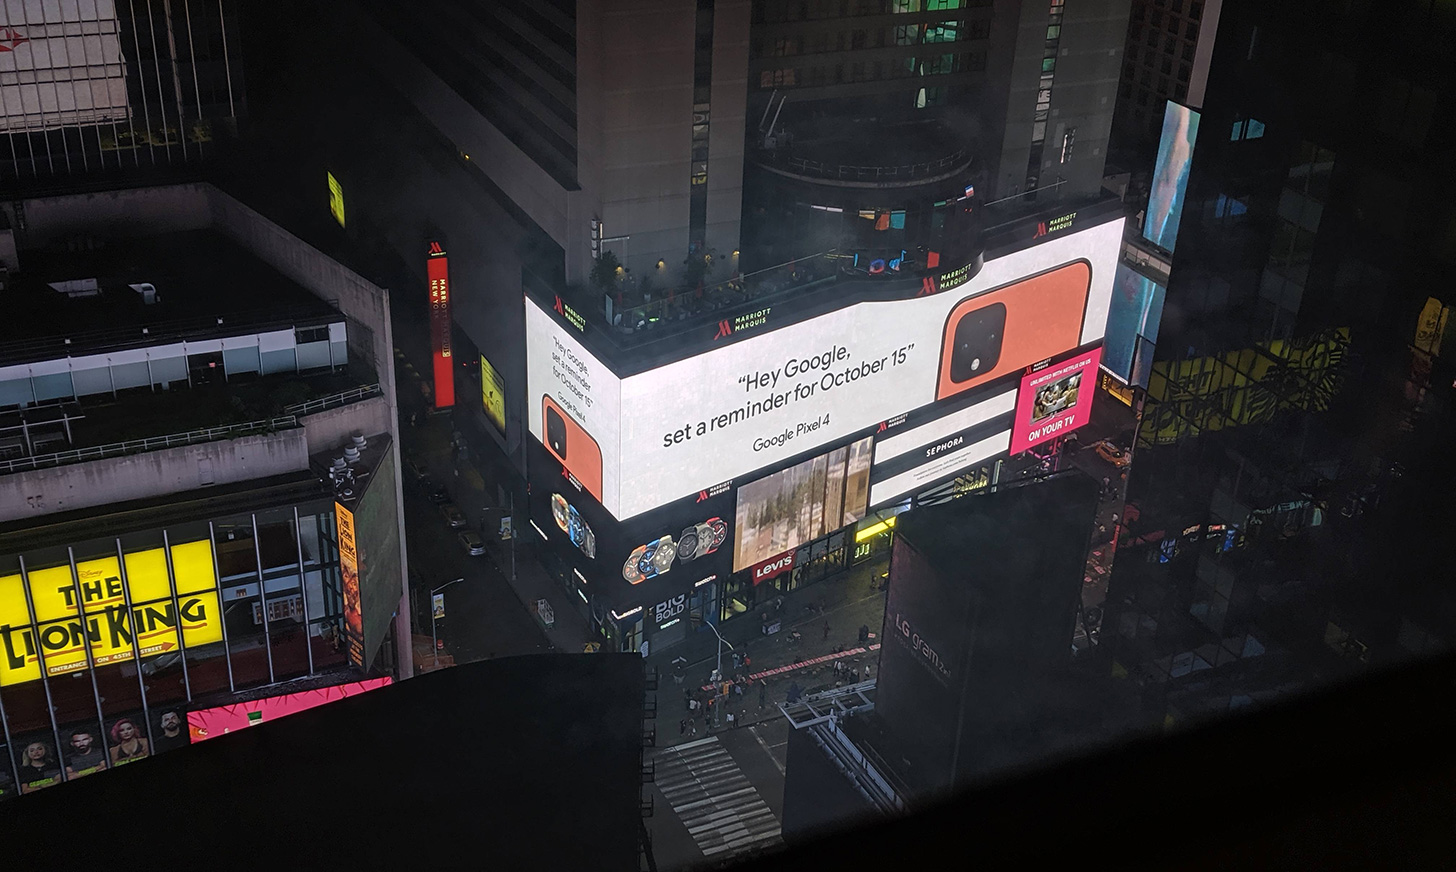 Orange Pixel 4 dikonfirmasi oleh iklan Google di Times Square